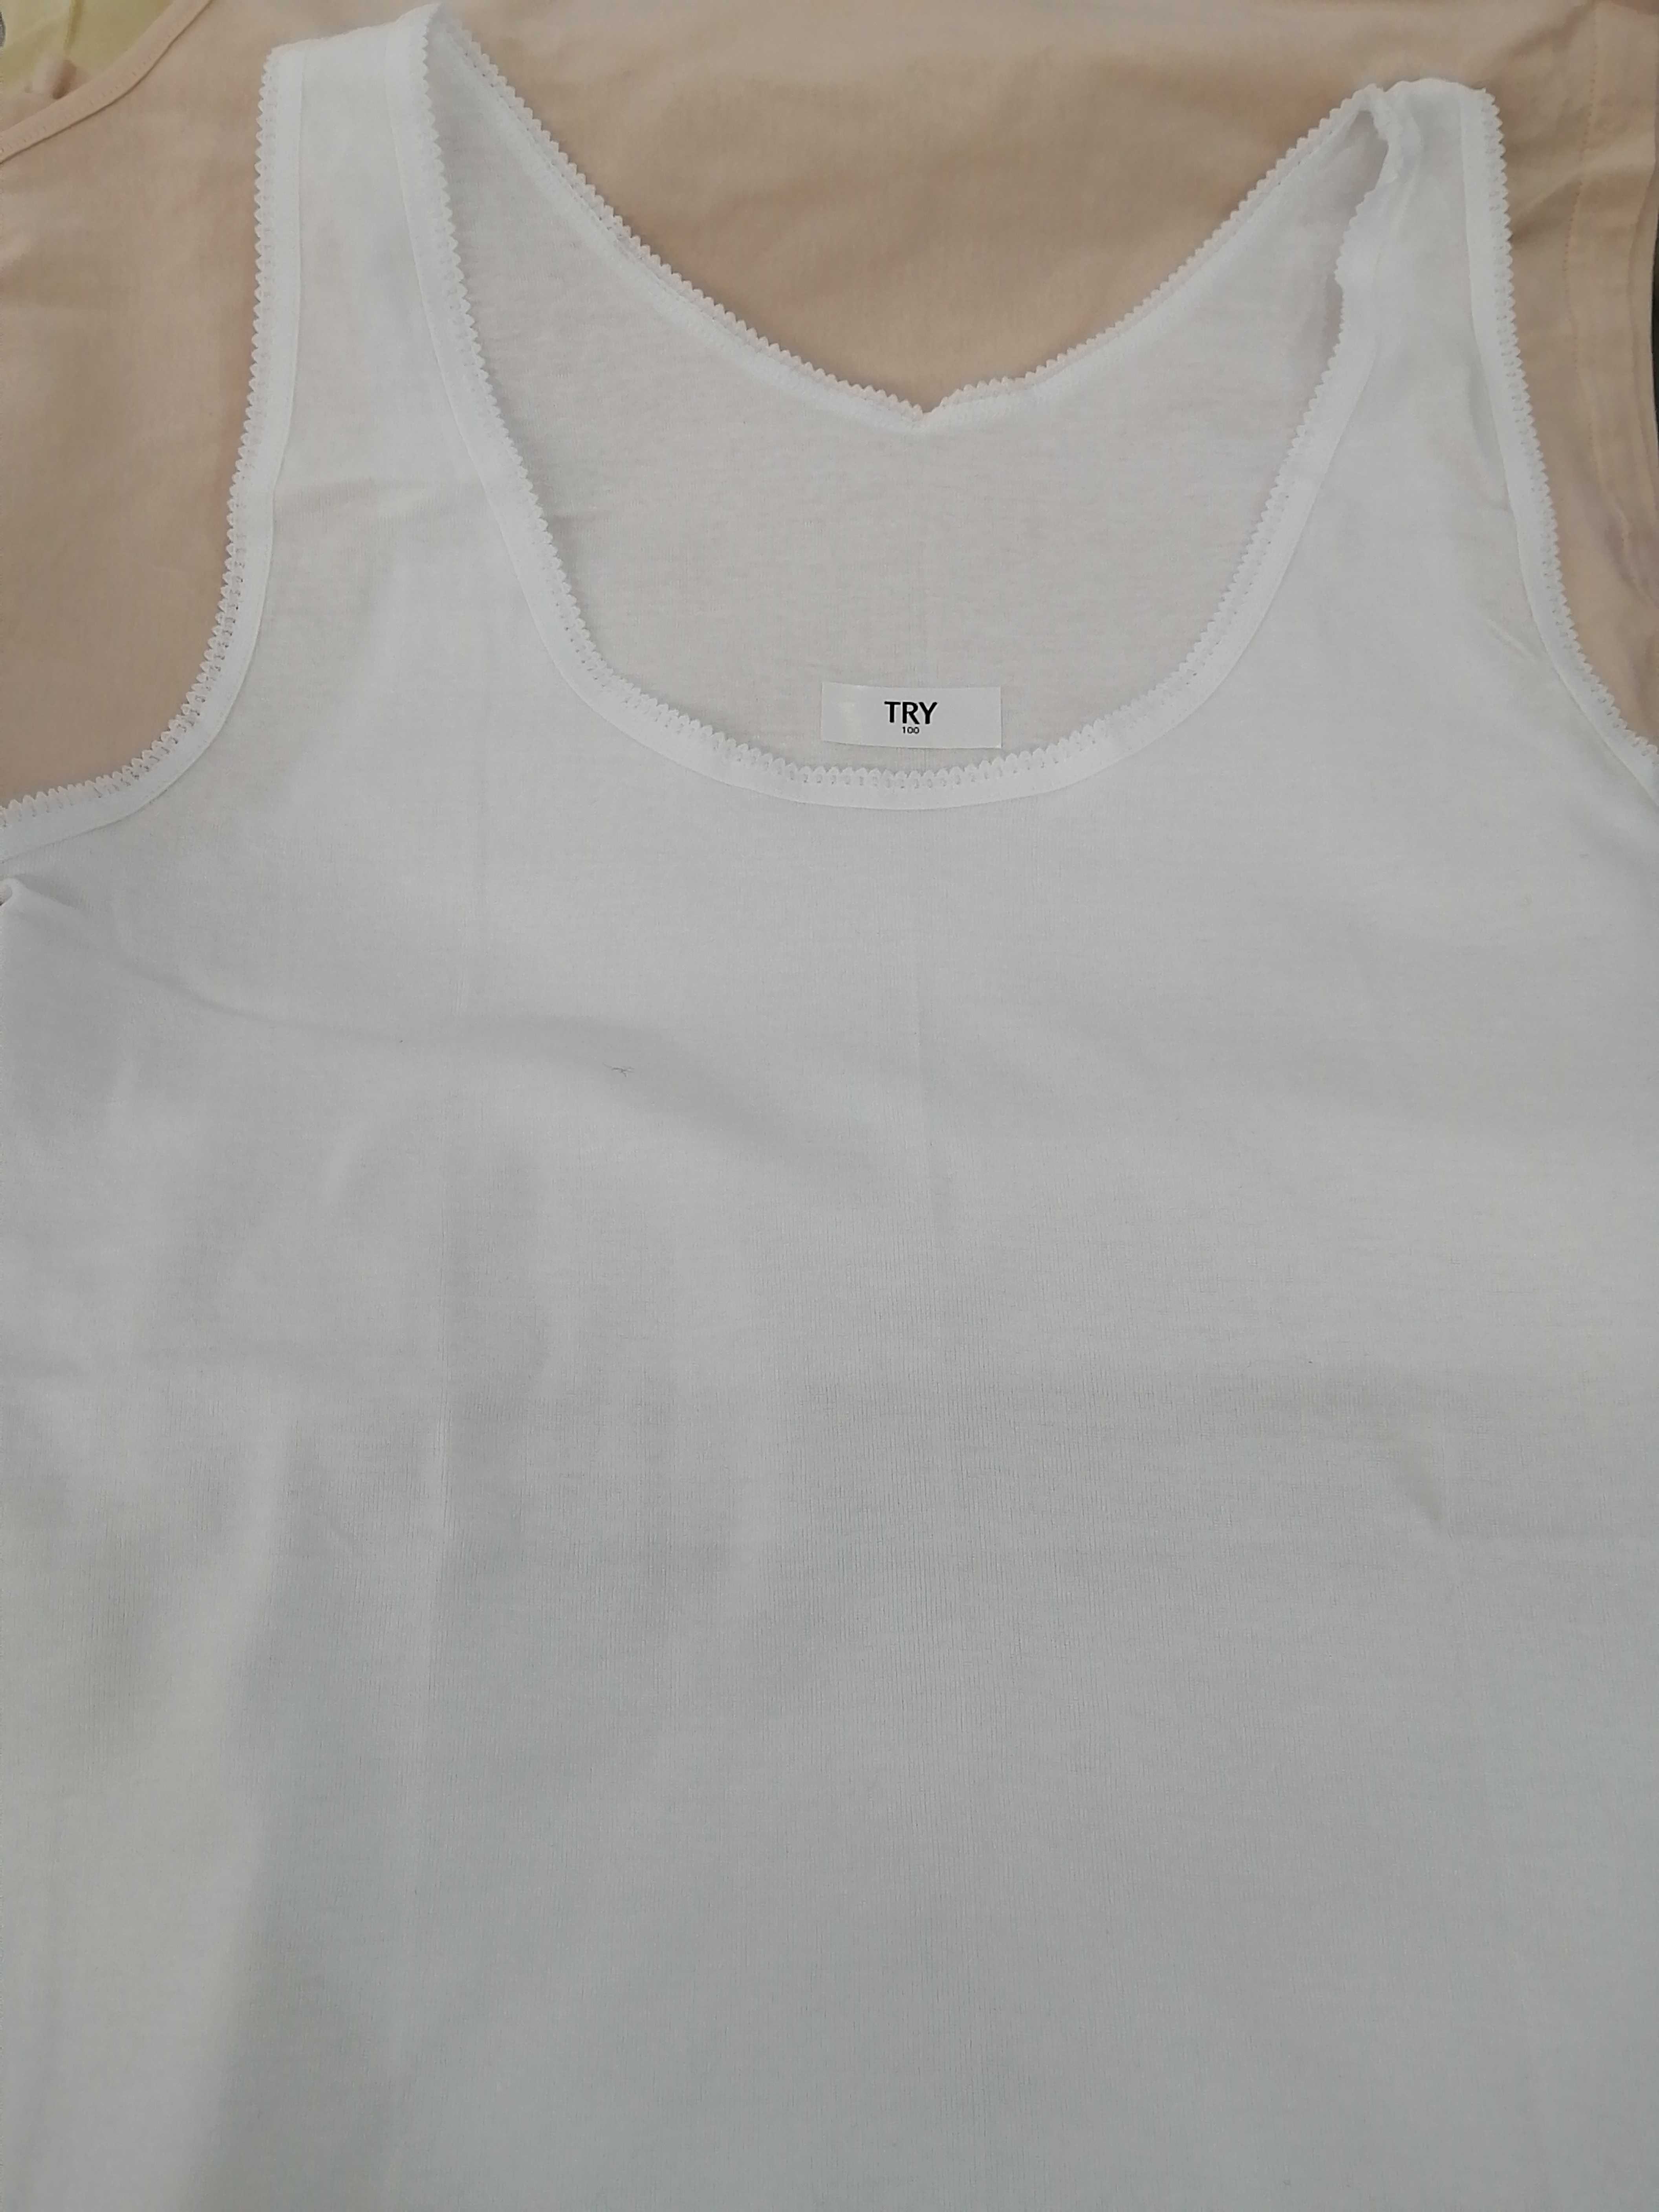 韩国TRY特来品牌内衣纯棉女士纯色白色薄款打底针织背心